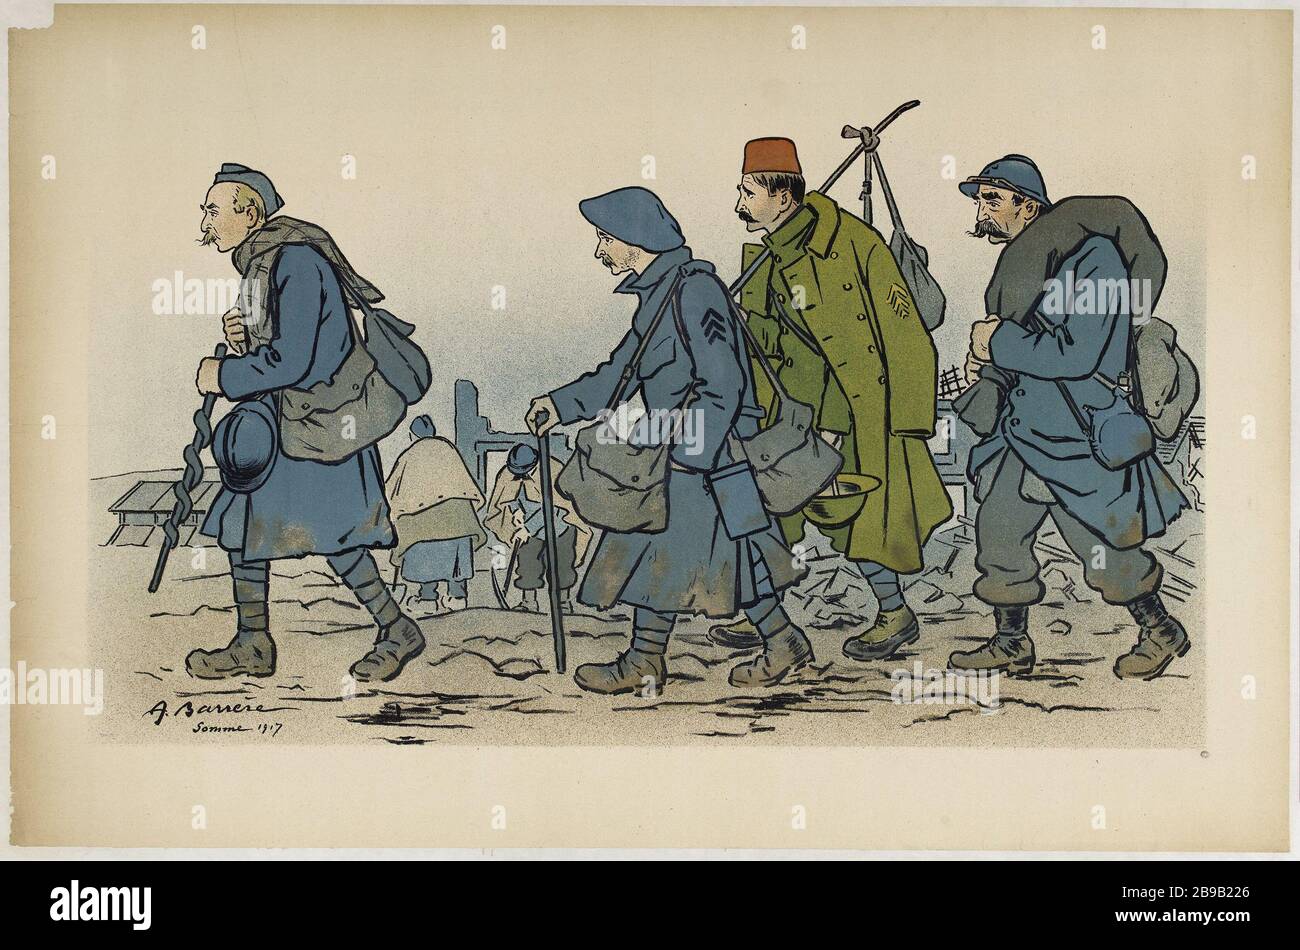 Soldaten marschieren Gruppe Adrien Barrère. "Groupe de soldats en marche". Lithographie couleur. 1917. Paris, musée Carnavalet. Stockfoto